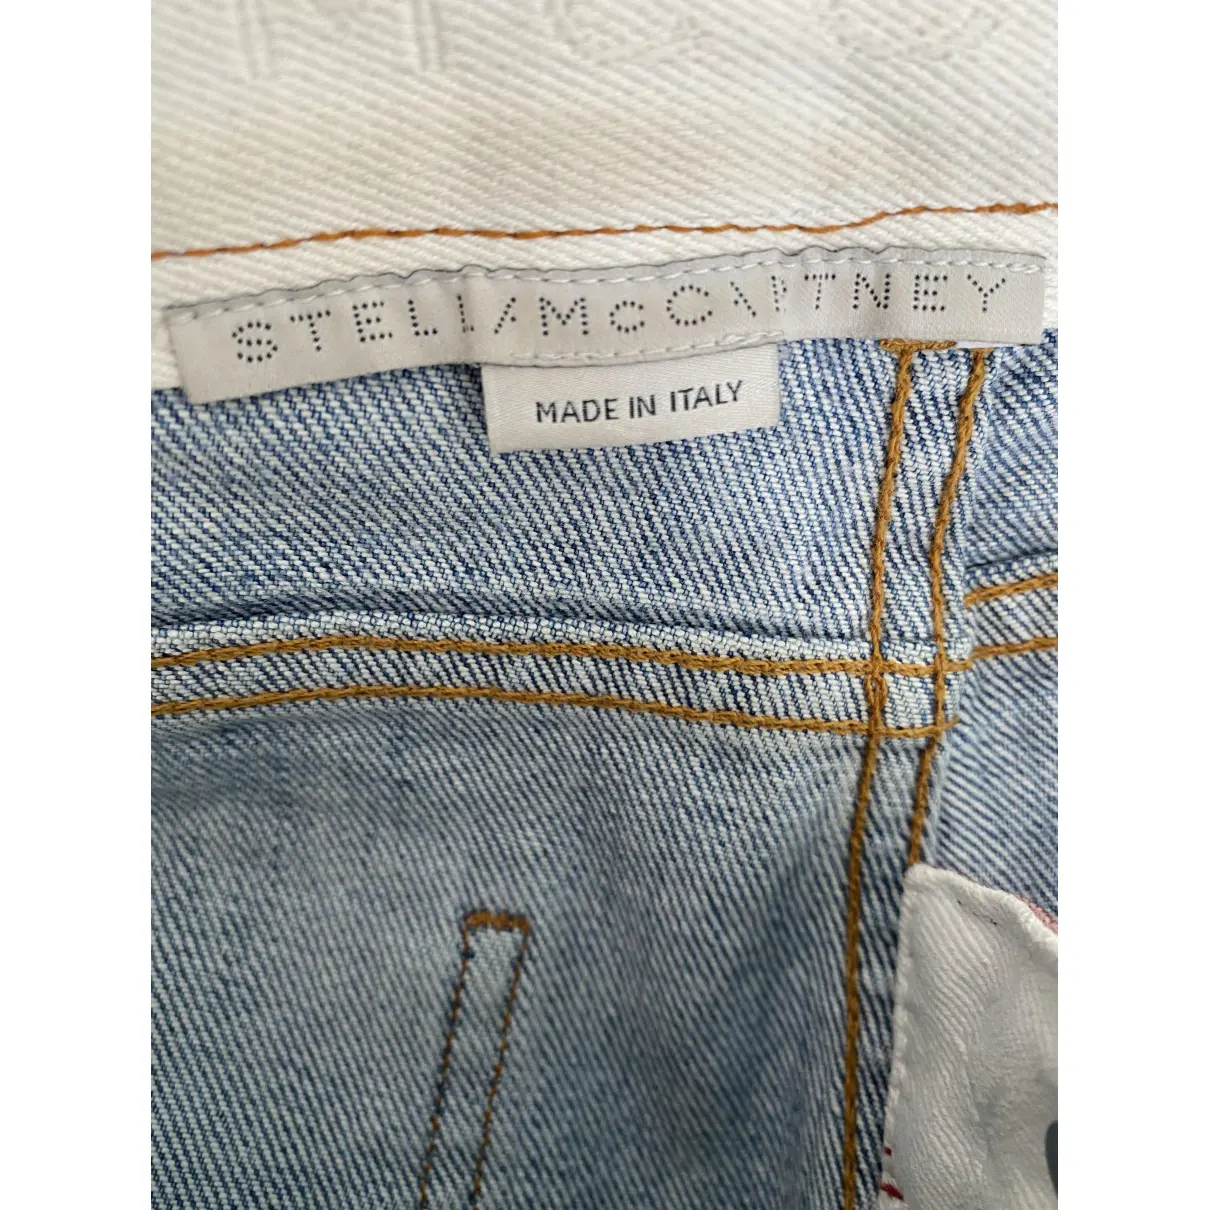 Buy Stella McCartney Jeans online